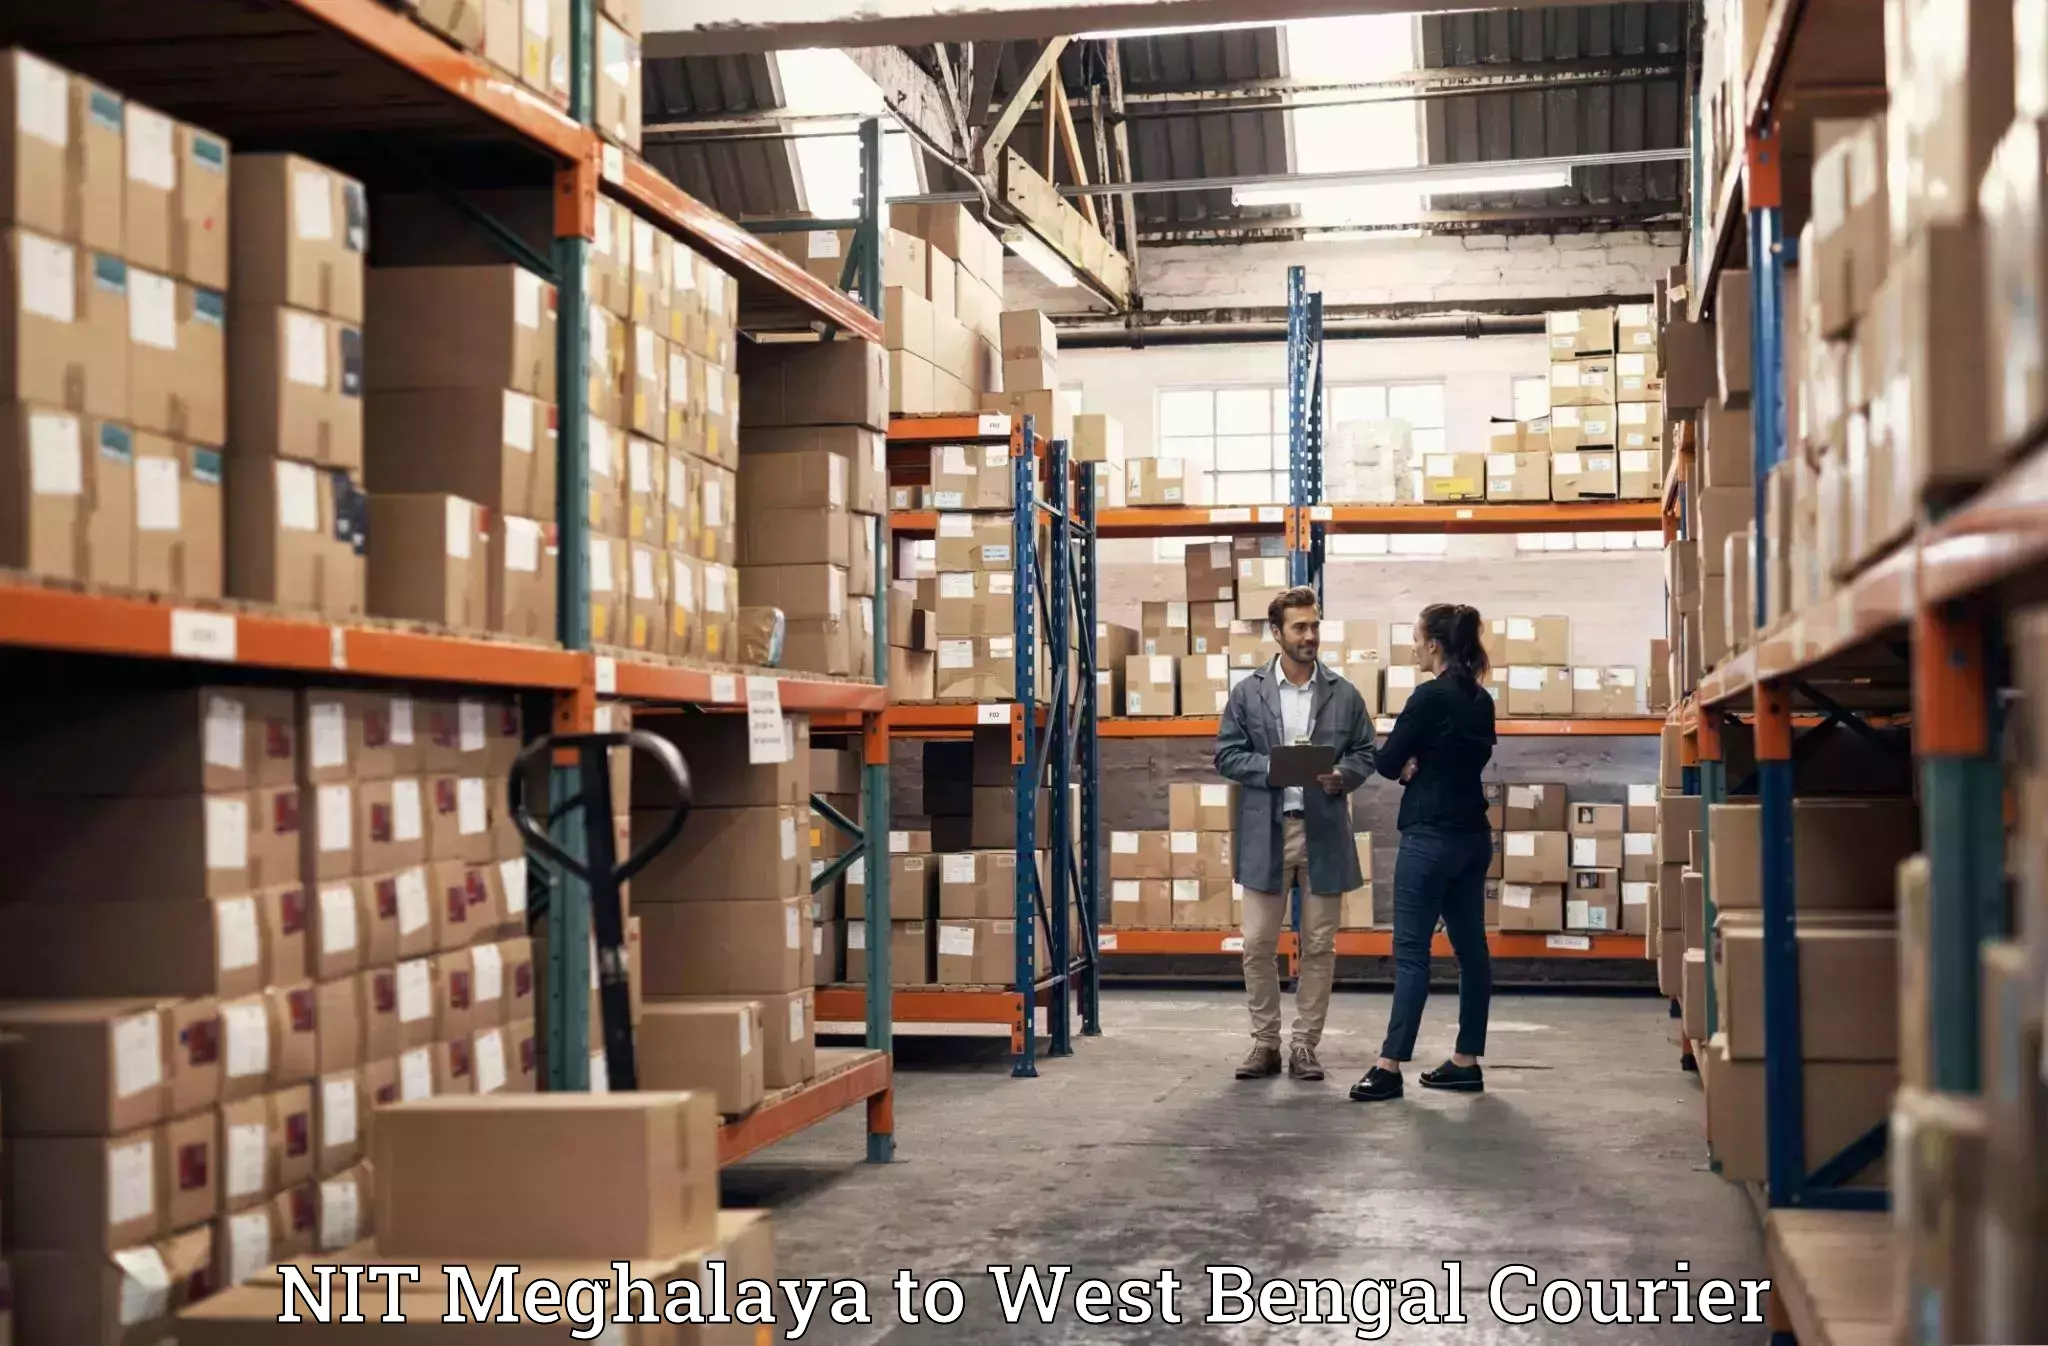 Nationwide furniture movers NIT Meghalaya to Beleghata